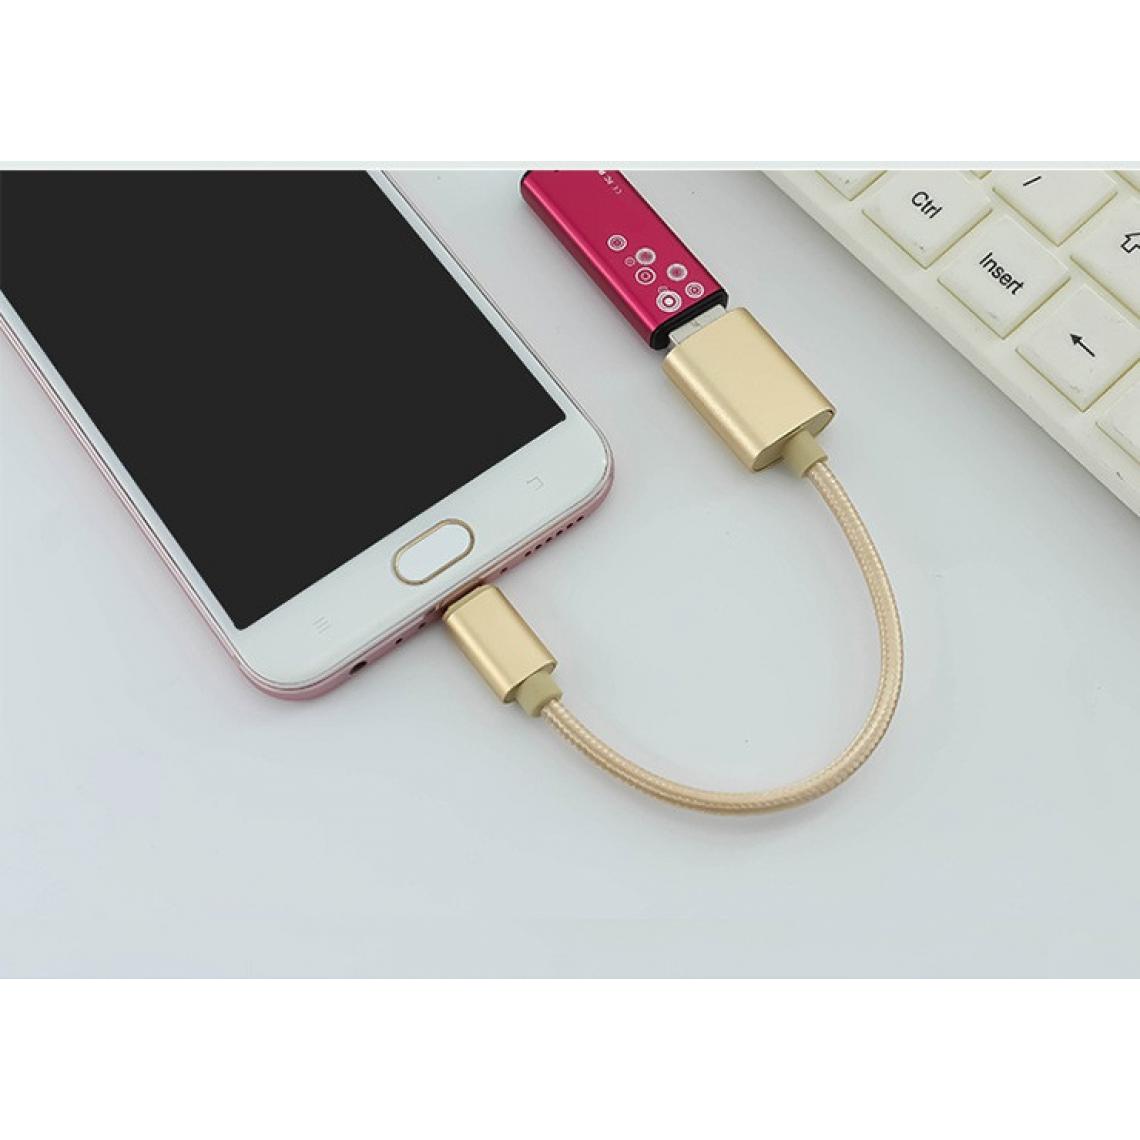 Shot - Adaptateur Type C/USB pour LeEco Le 1s Smartphone & MAC USB-C Clef (OR) - Autres accessoires smartphone